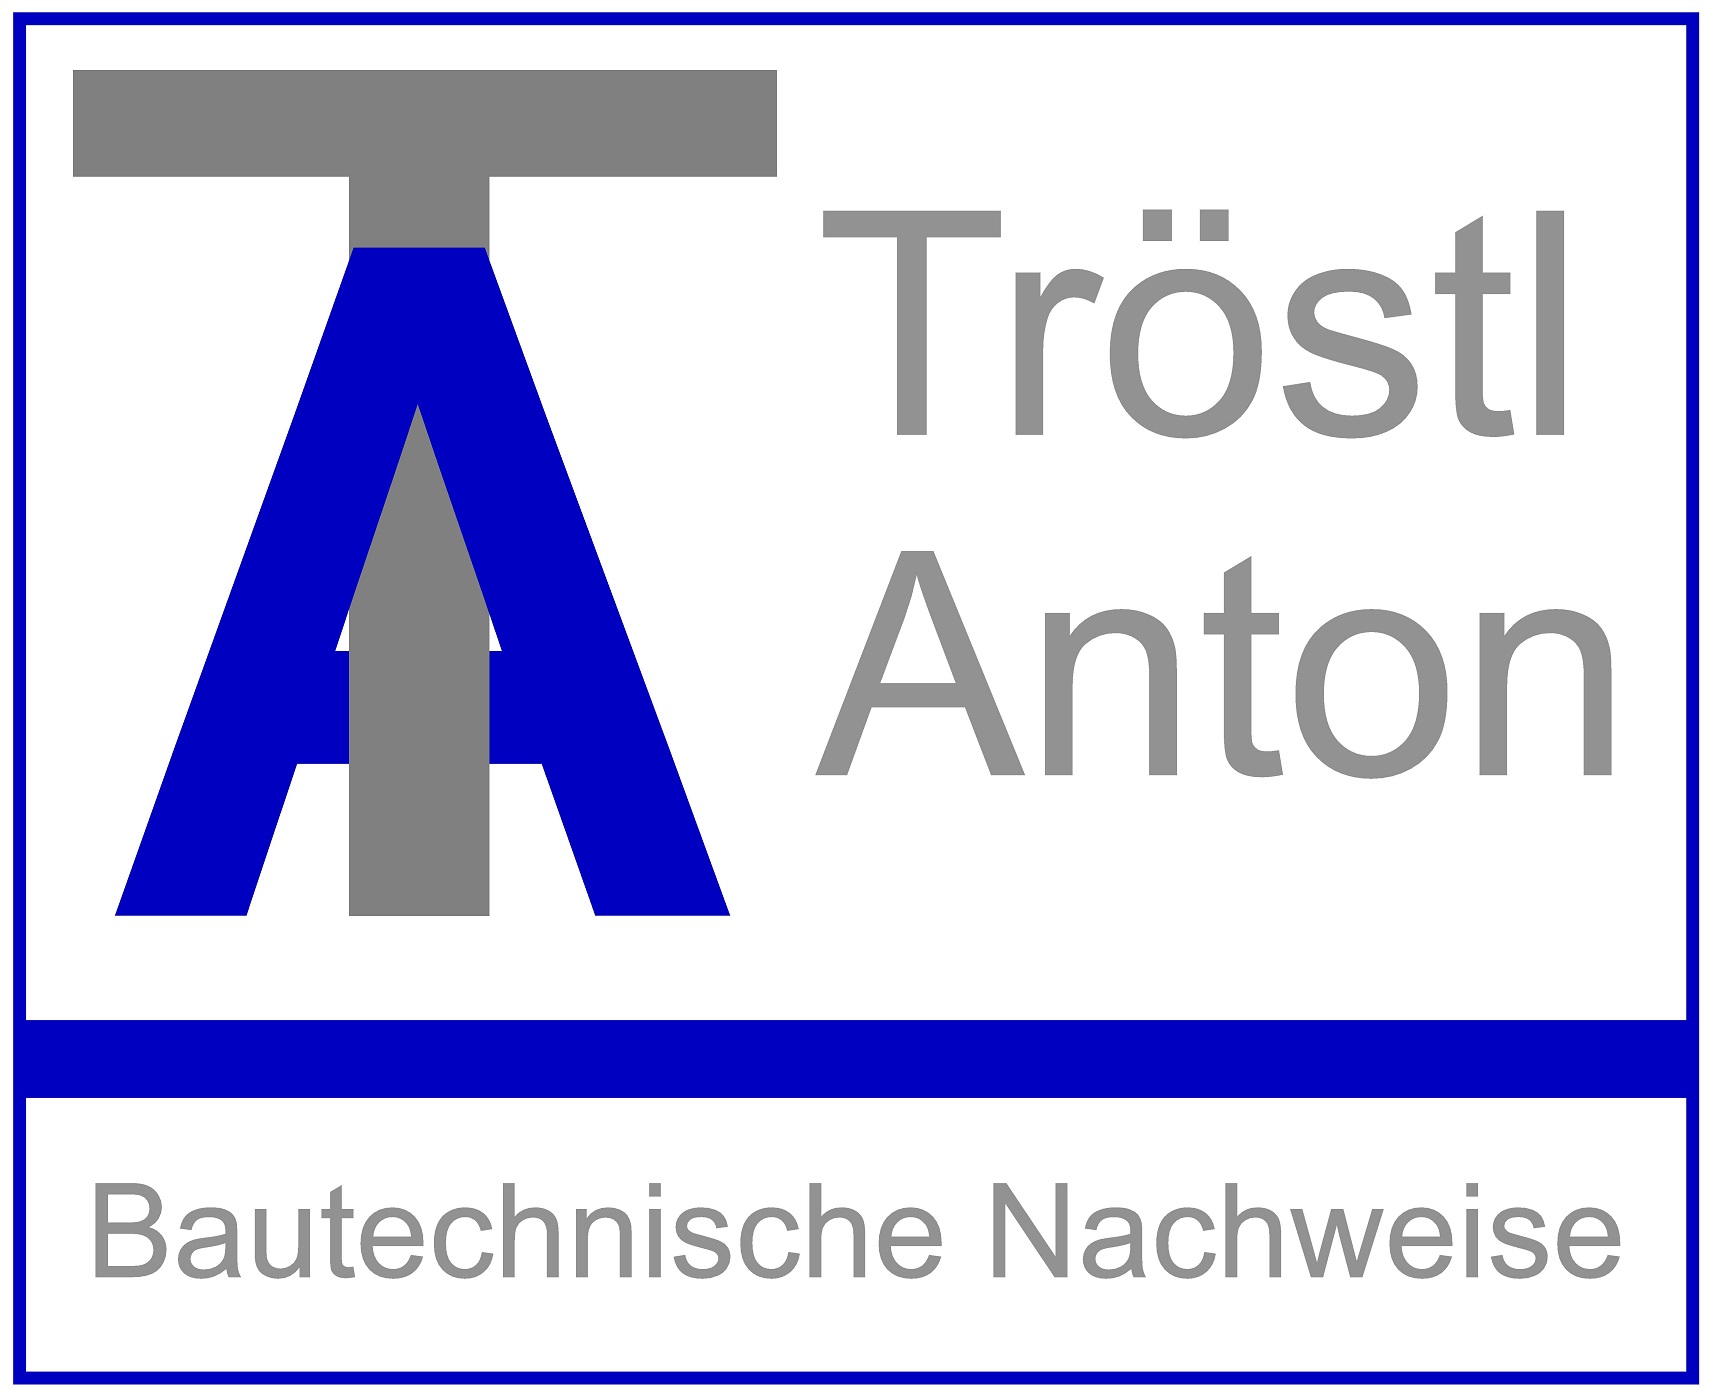 Tröstl Anton
Bautechnische Nachweise UG (haftungsbeschränkt)